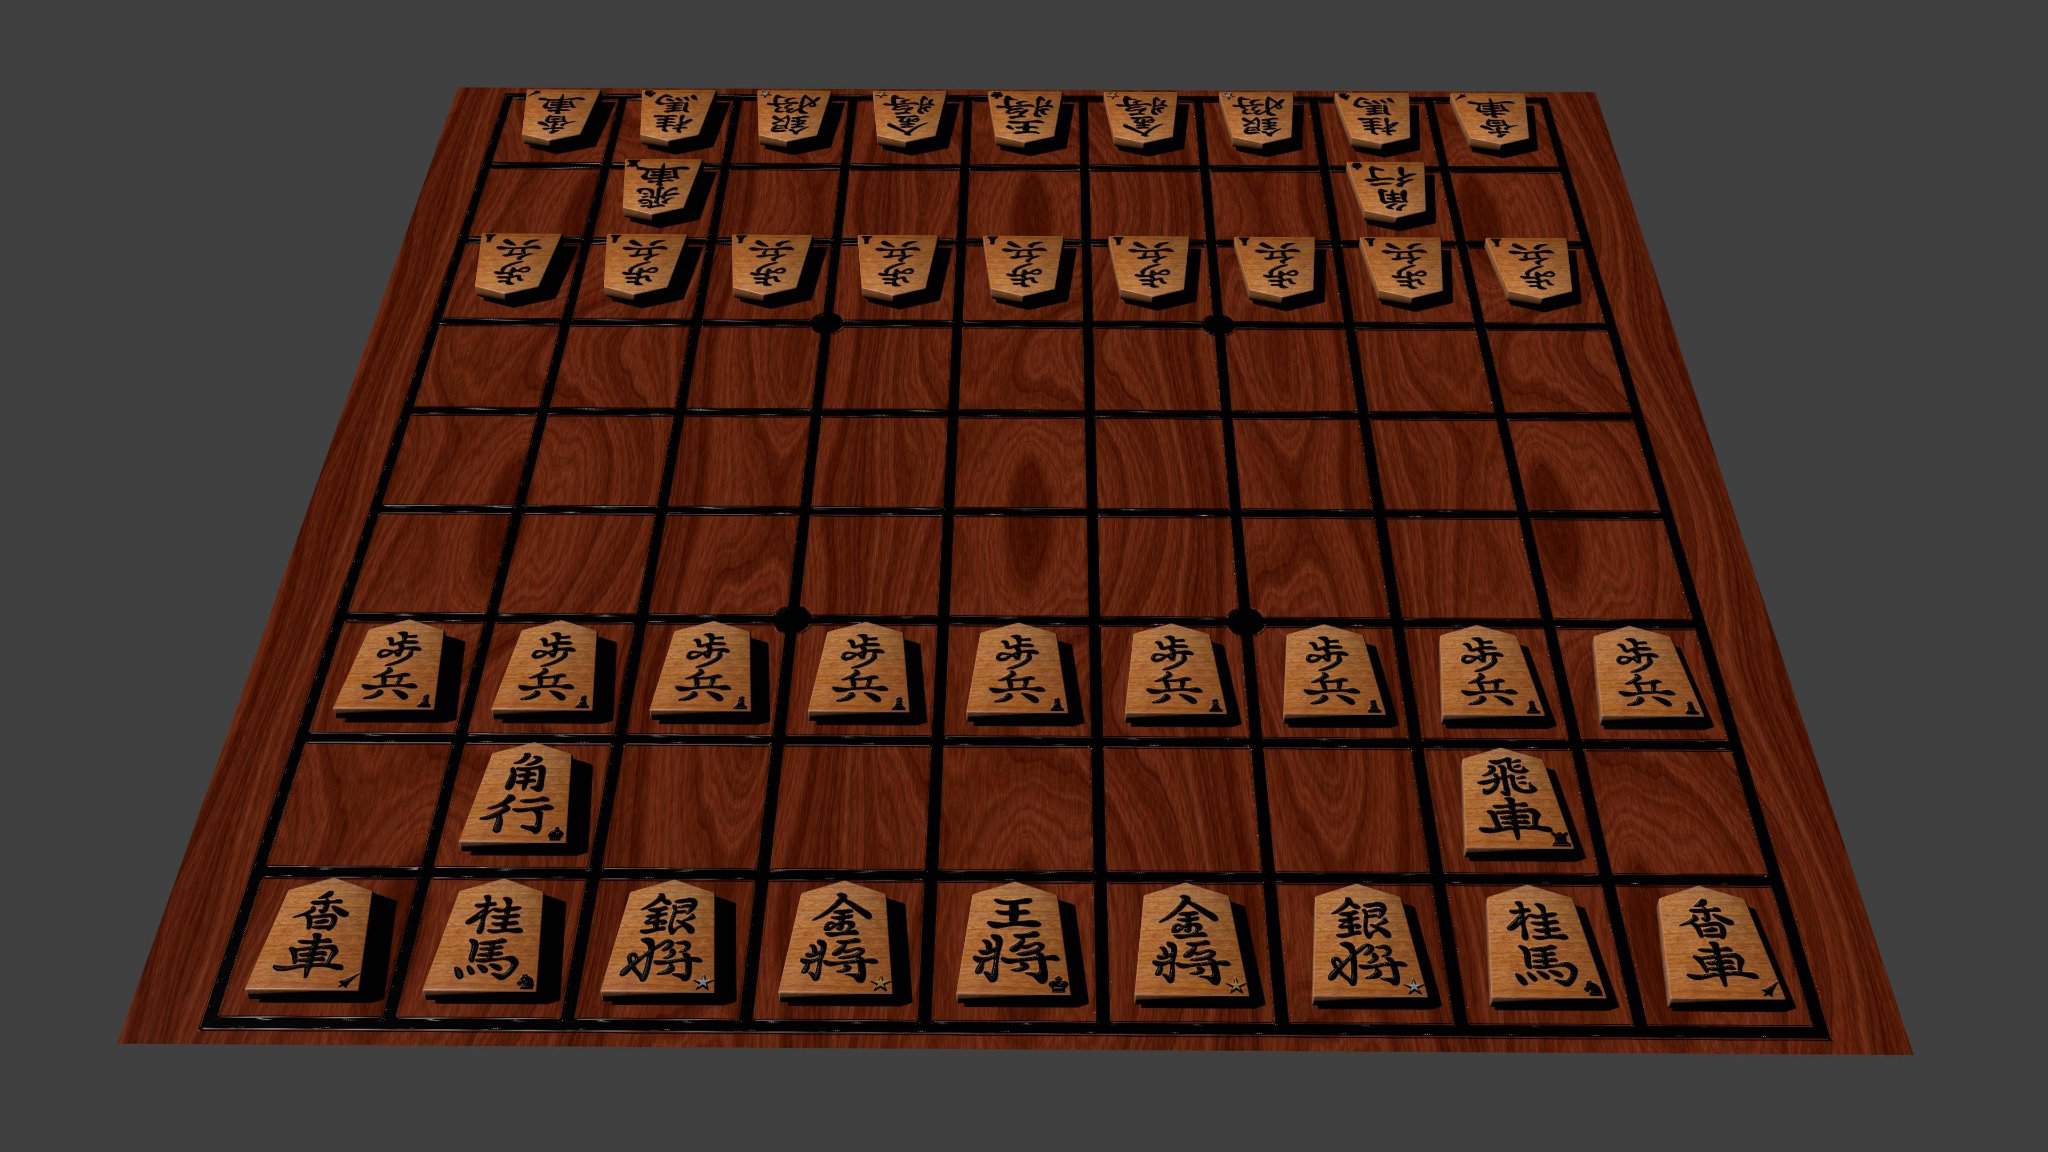 Игры японские правила. Японские Шоги японские шахматы. Шоги игра. Сёга игра японская. Японская настольная игра Шоги.